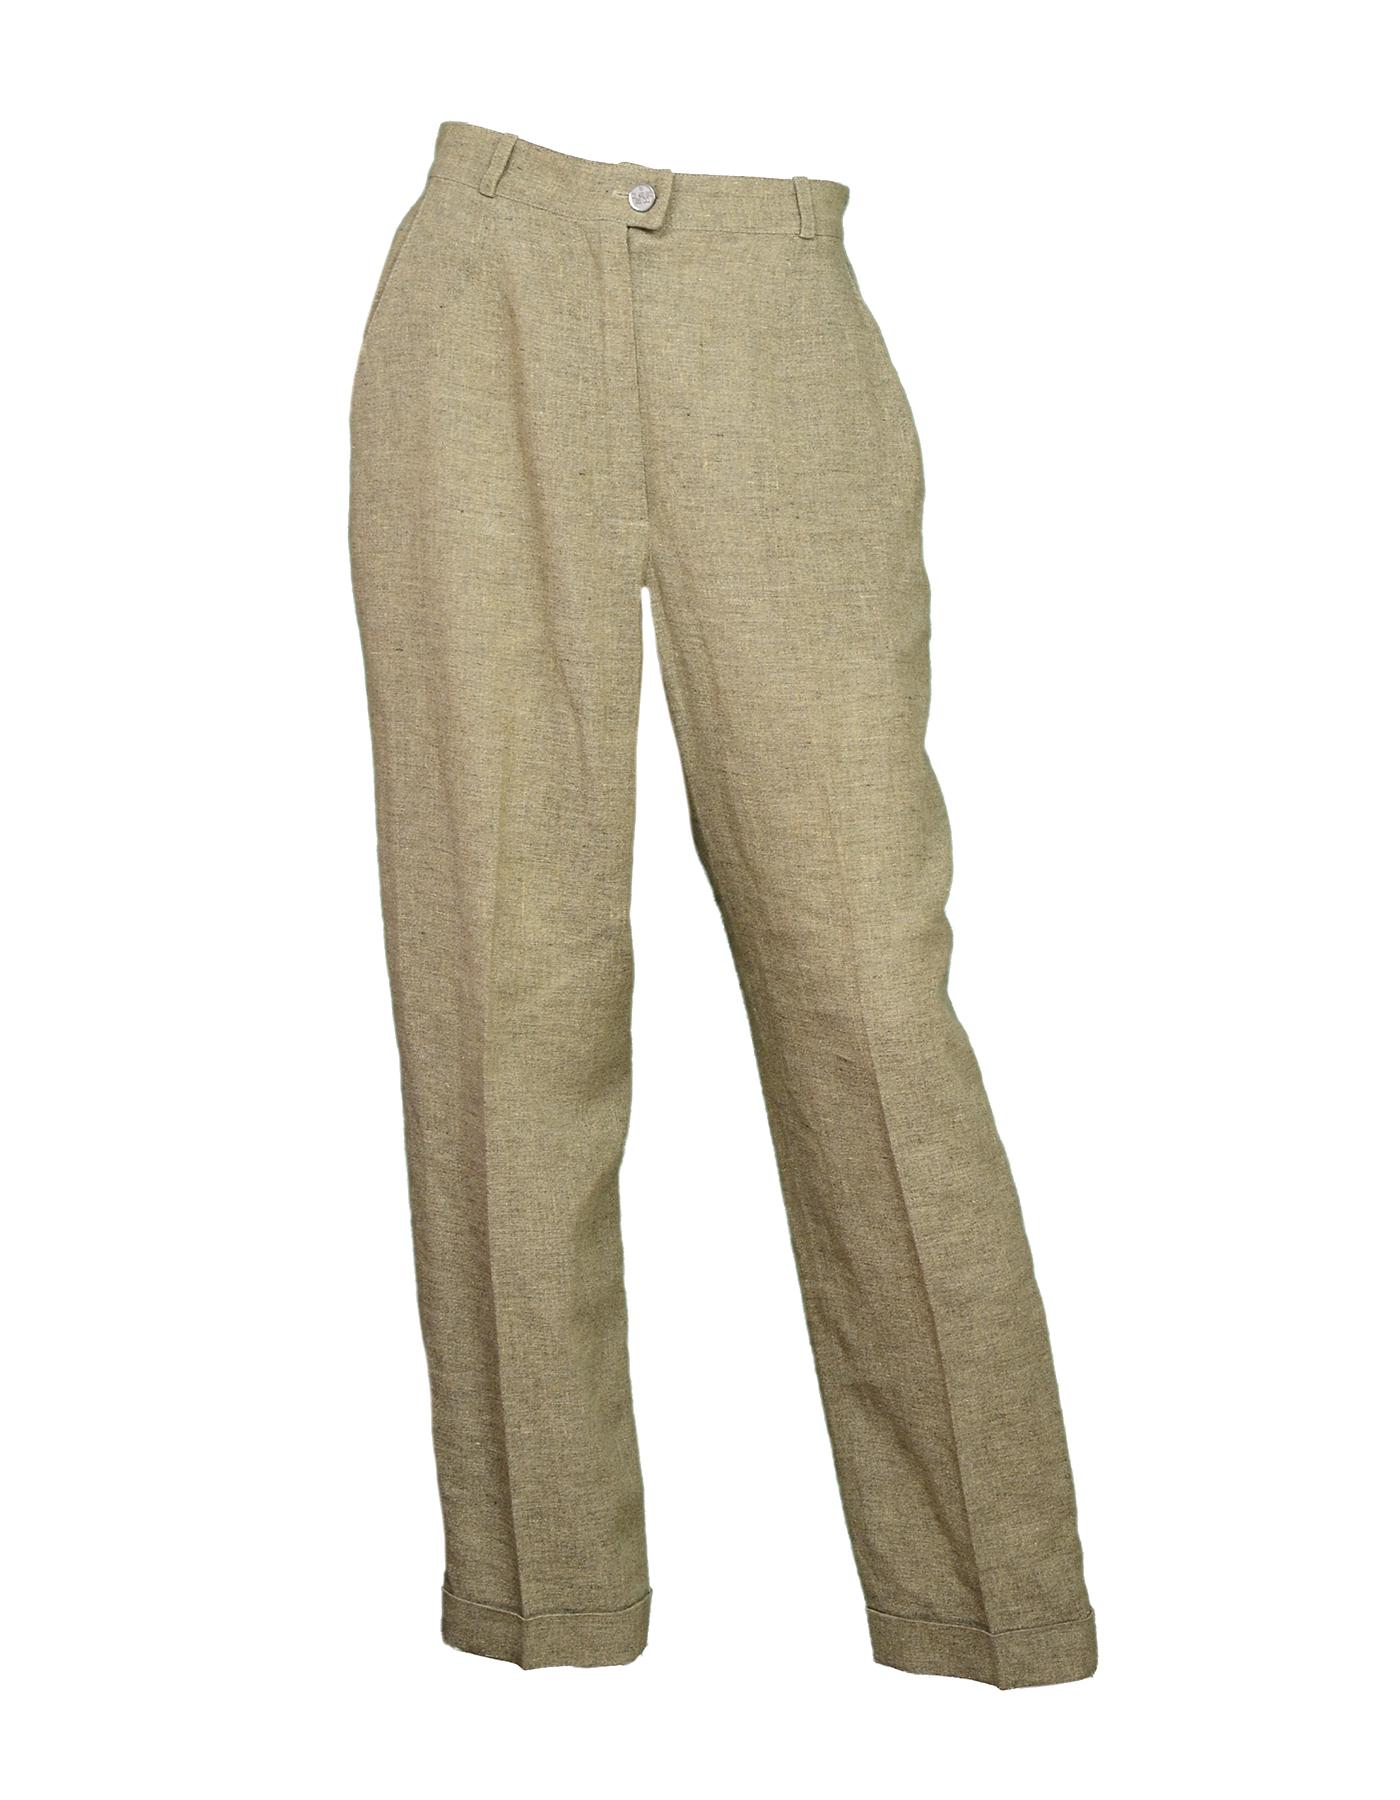 Women's Chanel Beige Linen Jacket/Pant Suit Set Sz 40